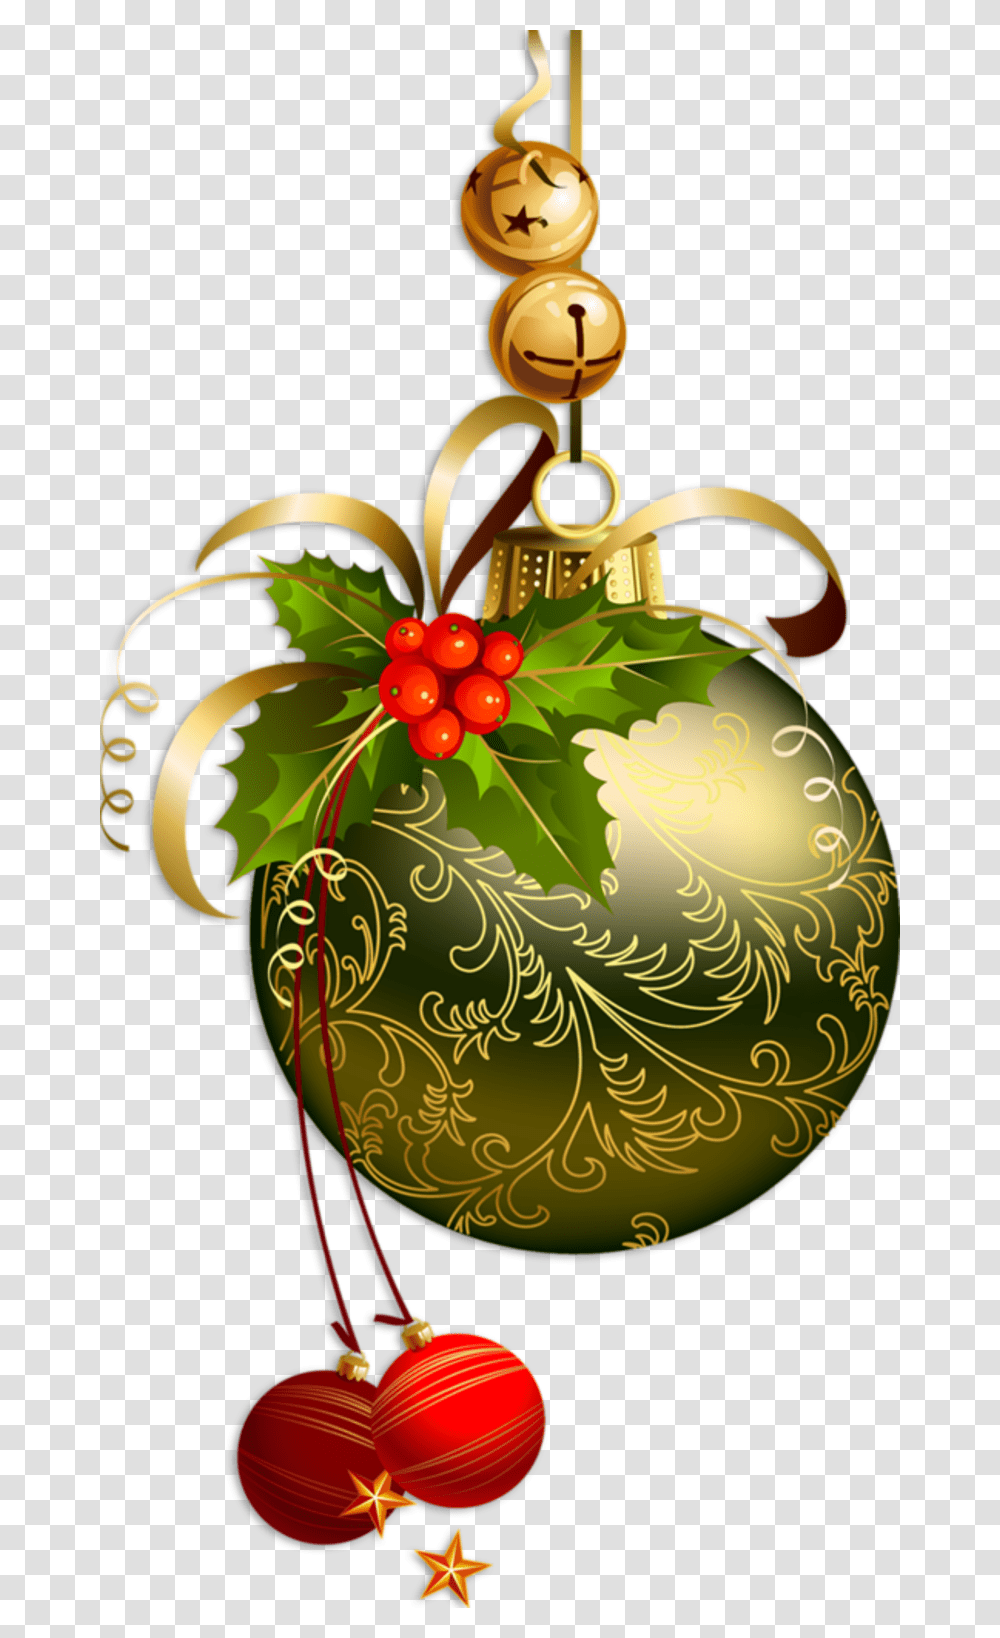 Decos De Noel Christmas Images Without Background, Plant, Ornament Transparent Png